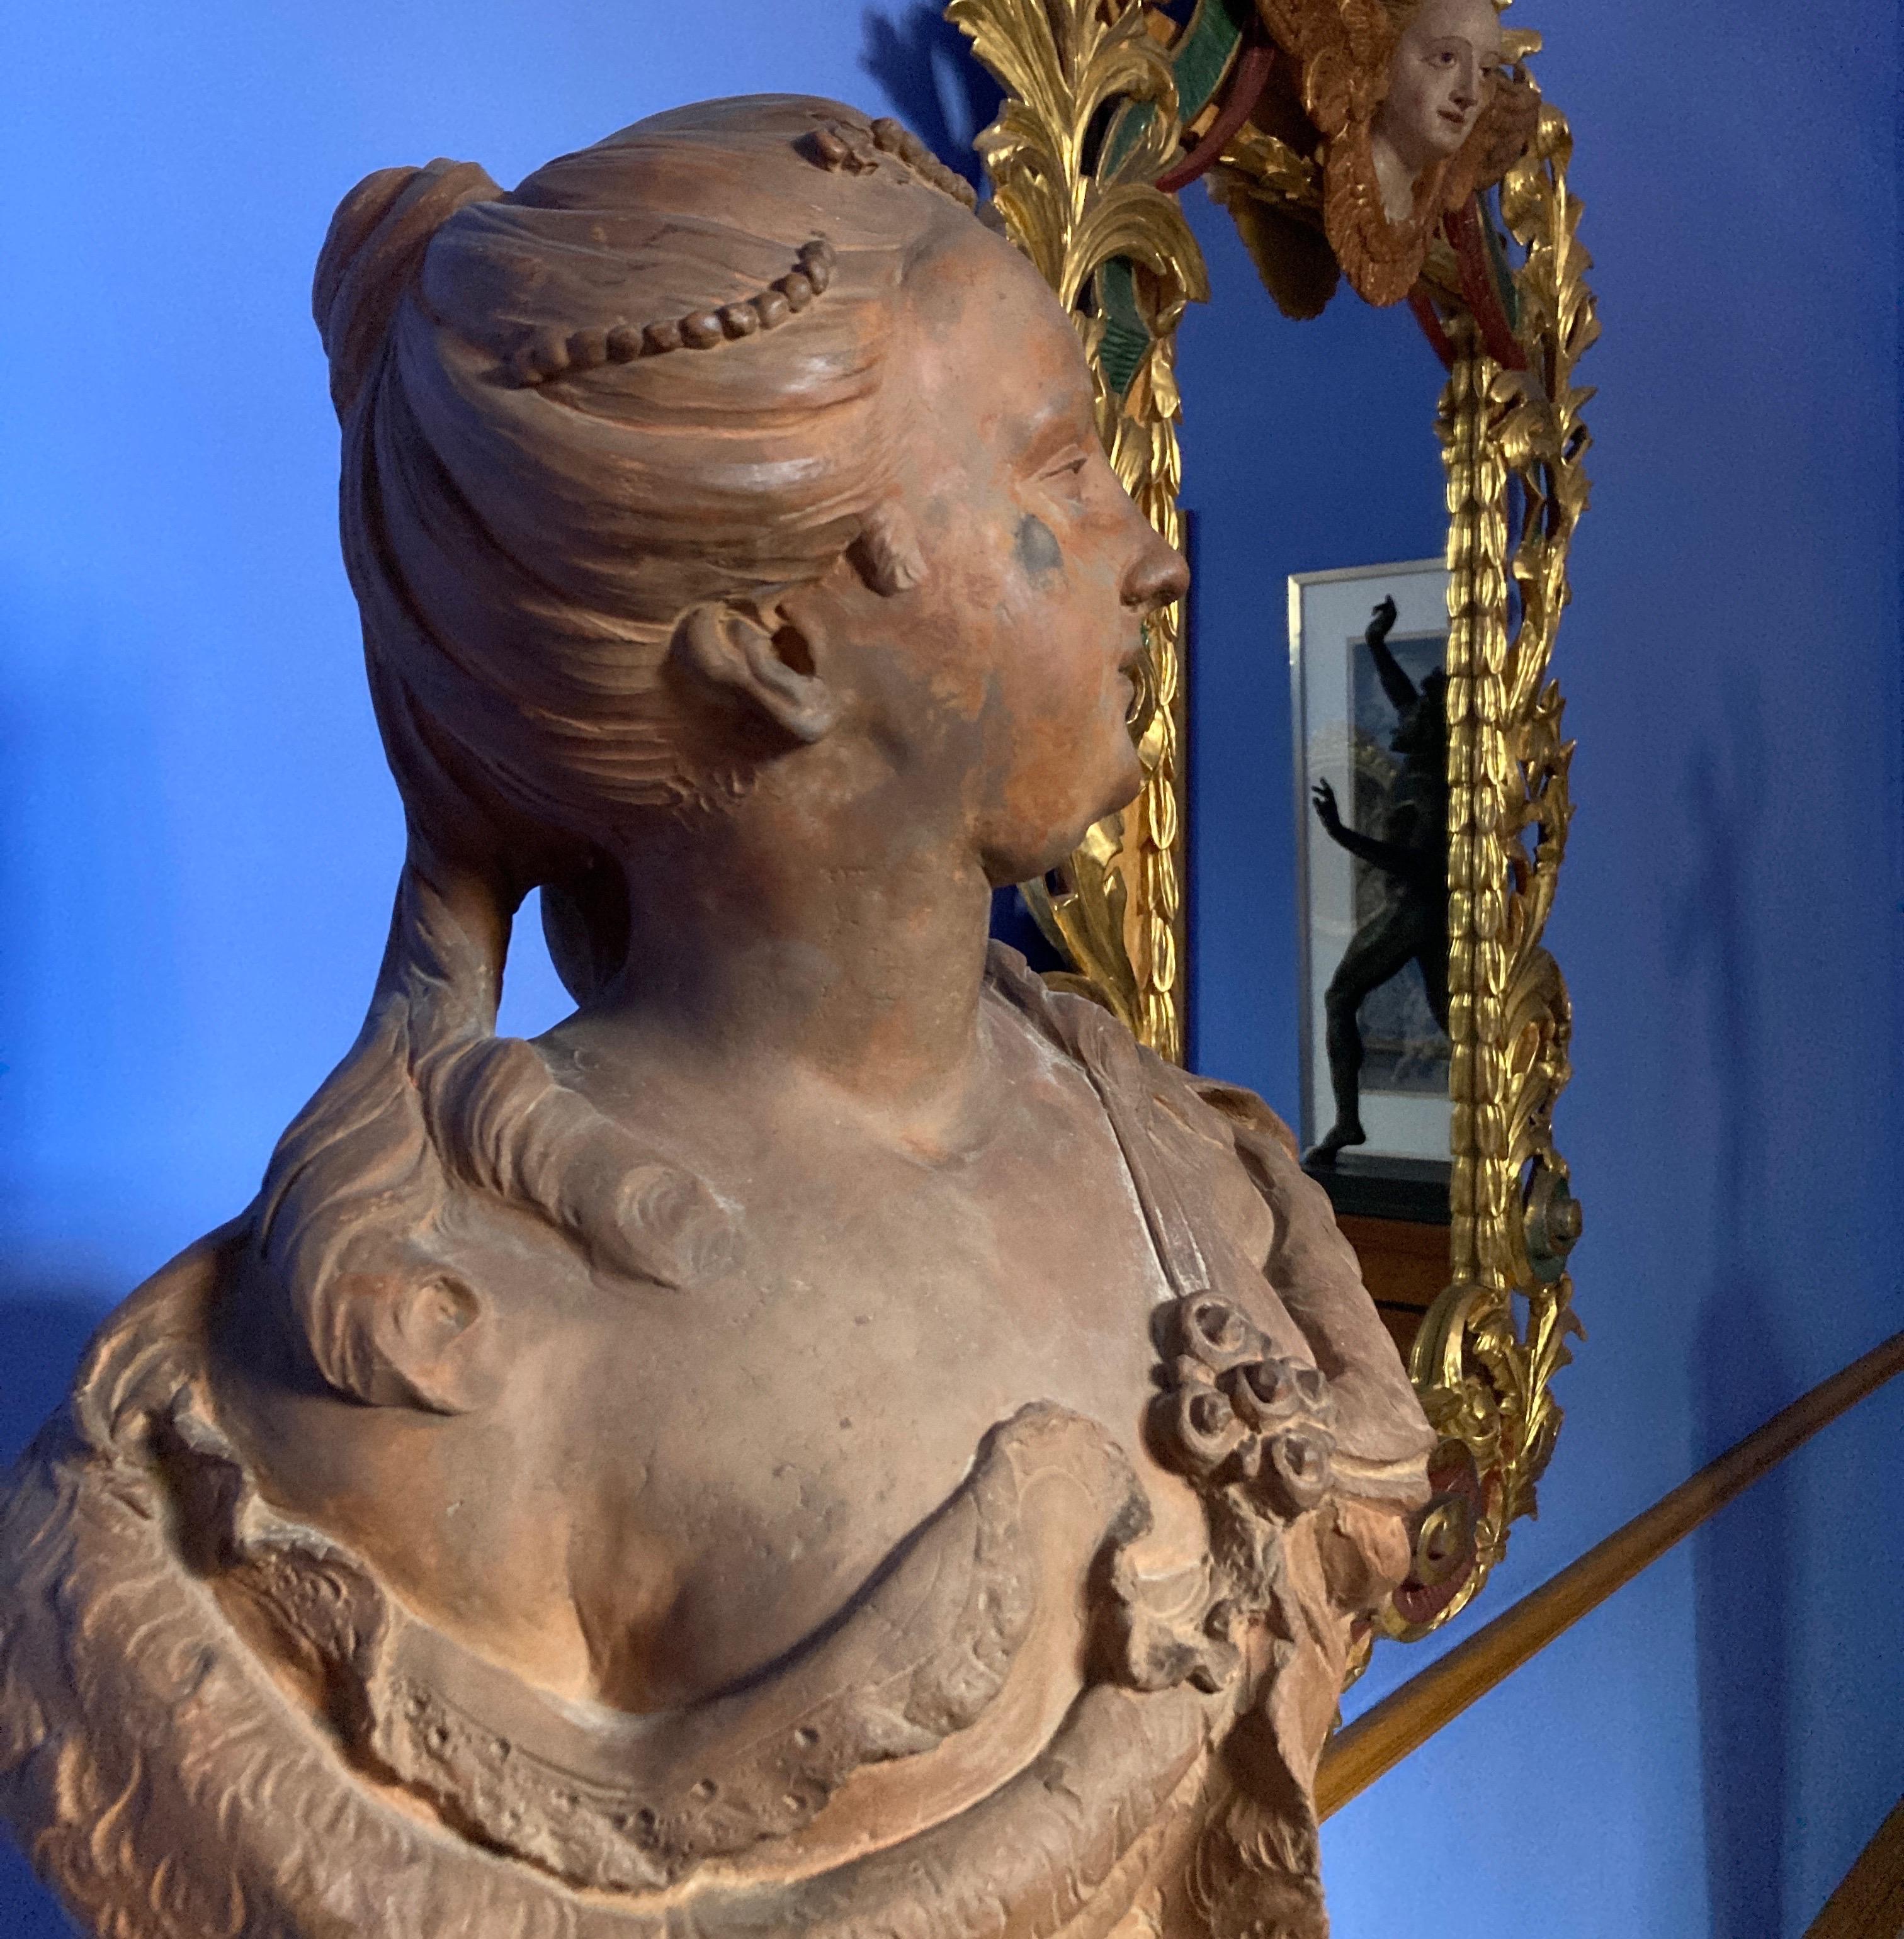 Bust einer Dame, prob Queen Elisabeth Petrowna, Terrakotta-Skulptur, Barockkunst (Blau), Figurative Sculpture, von Unknown